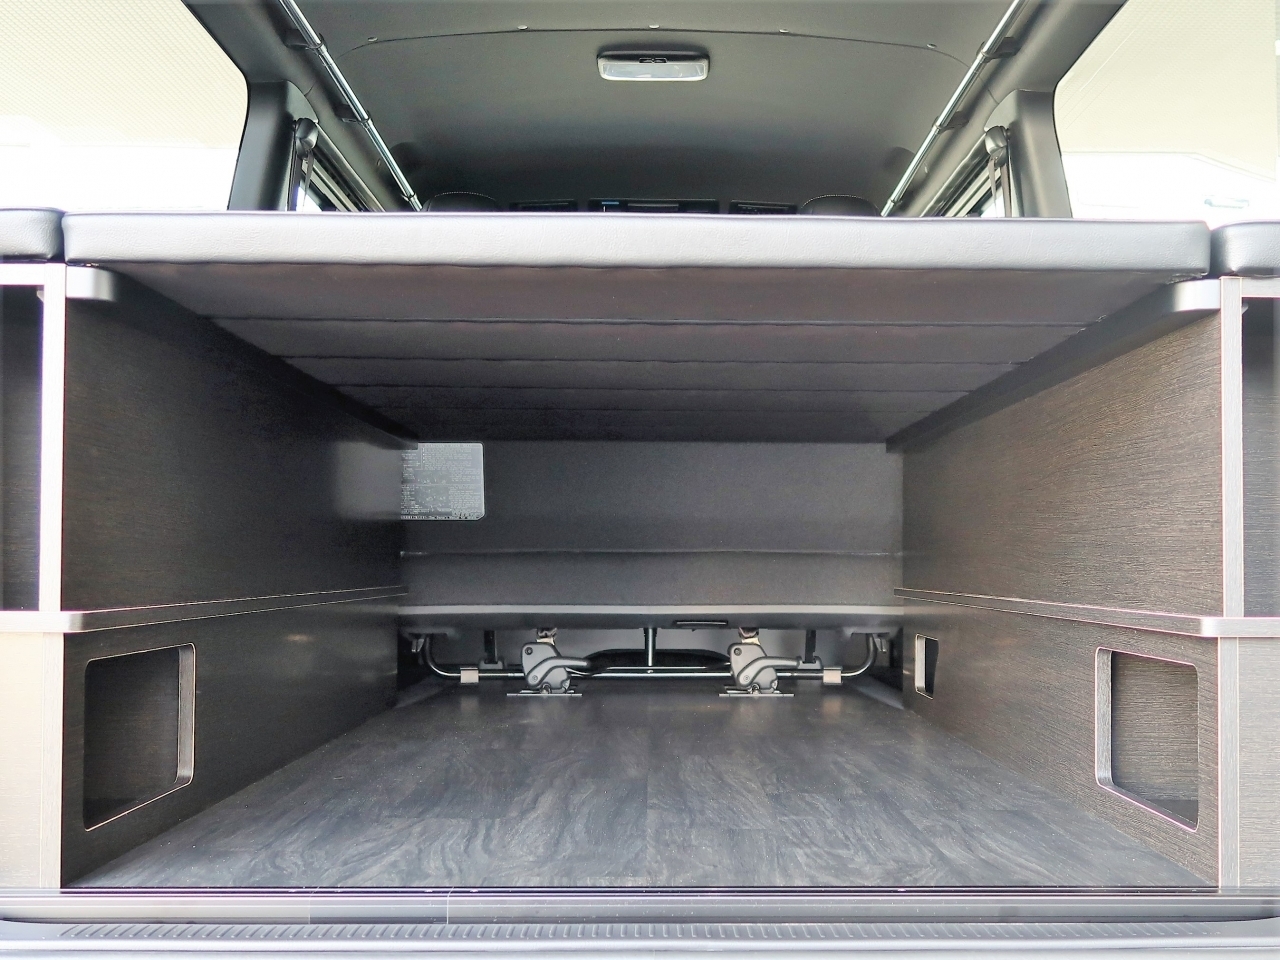 ハイエース ナローボディバン FD-BOXエントリーモデル【FD-BOX V01-N】 大きな荷物を積載するときにはベッドマットを上段に設置